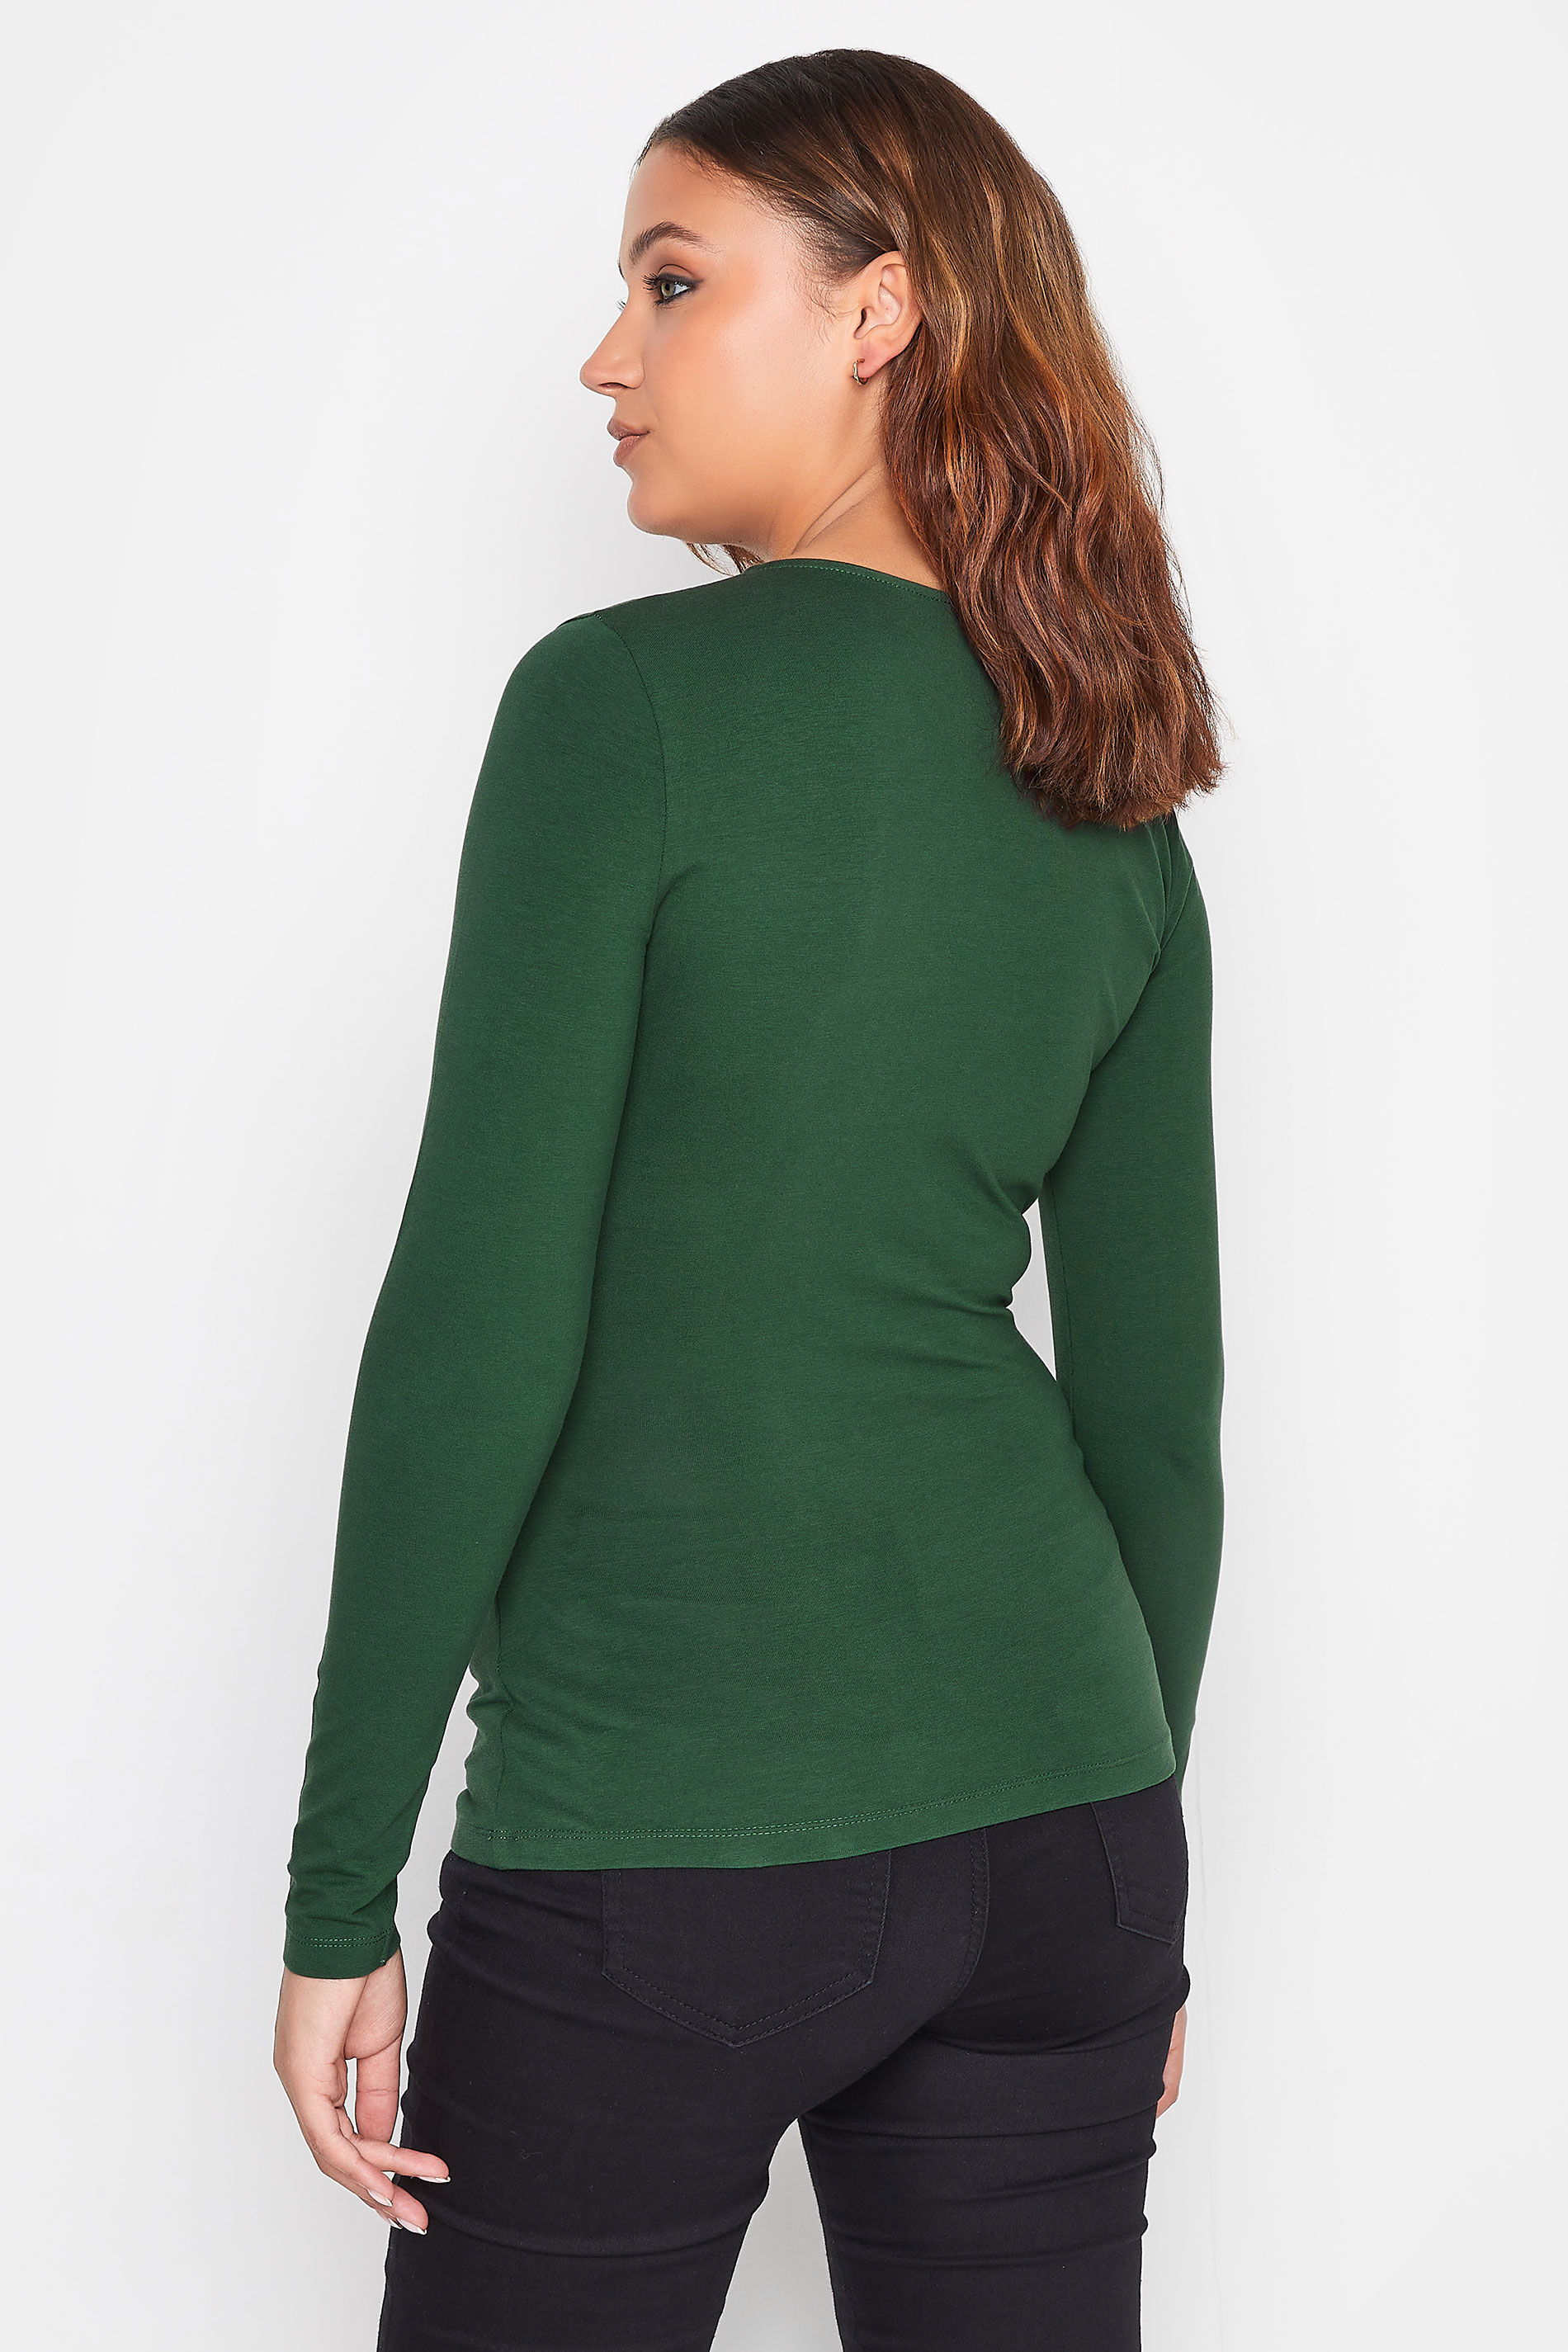 LTS Tall Women's Dark Green Jersey Wrap Top | Long Tall Sally 3